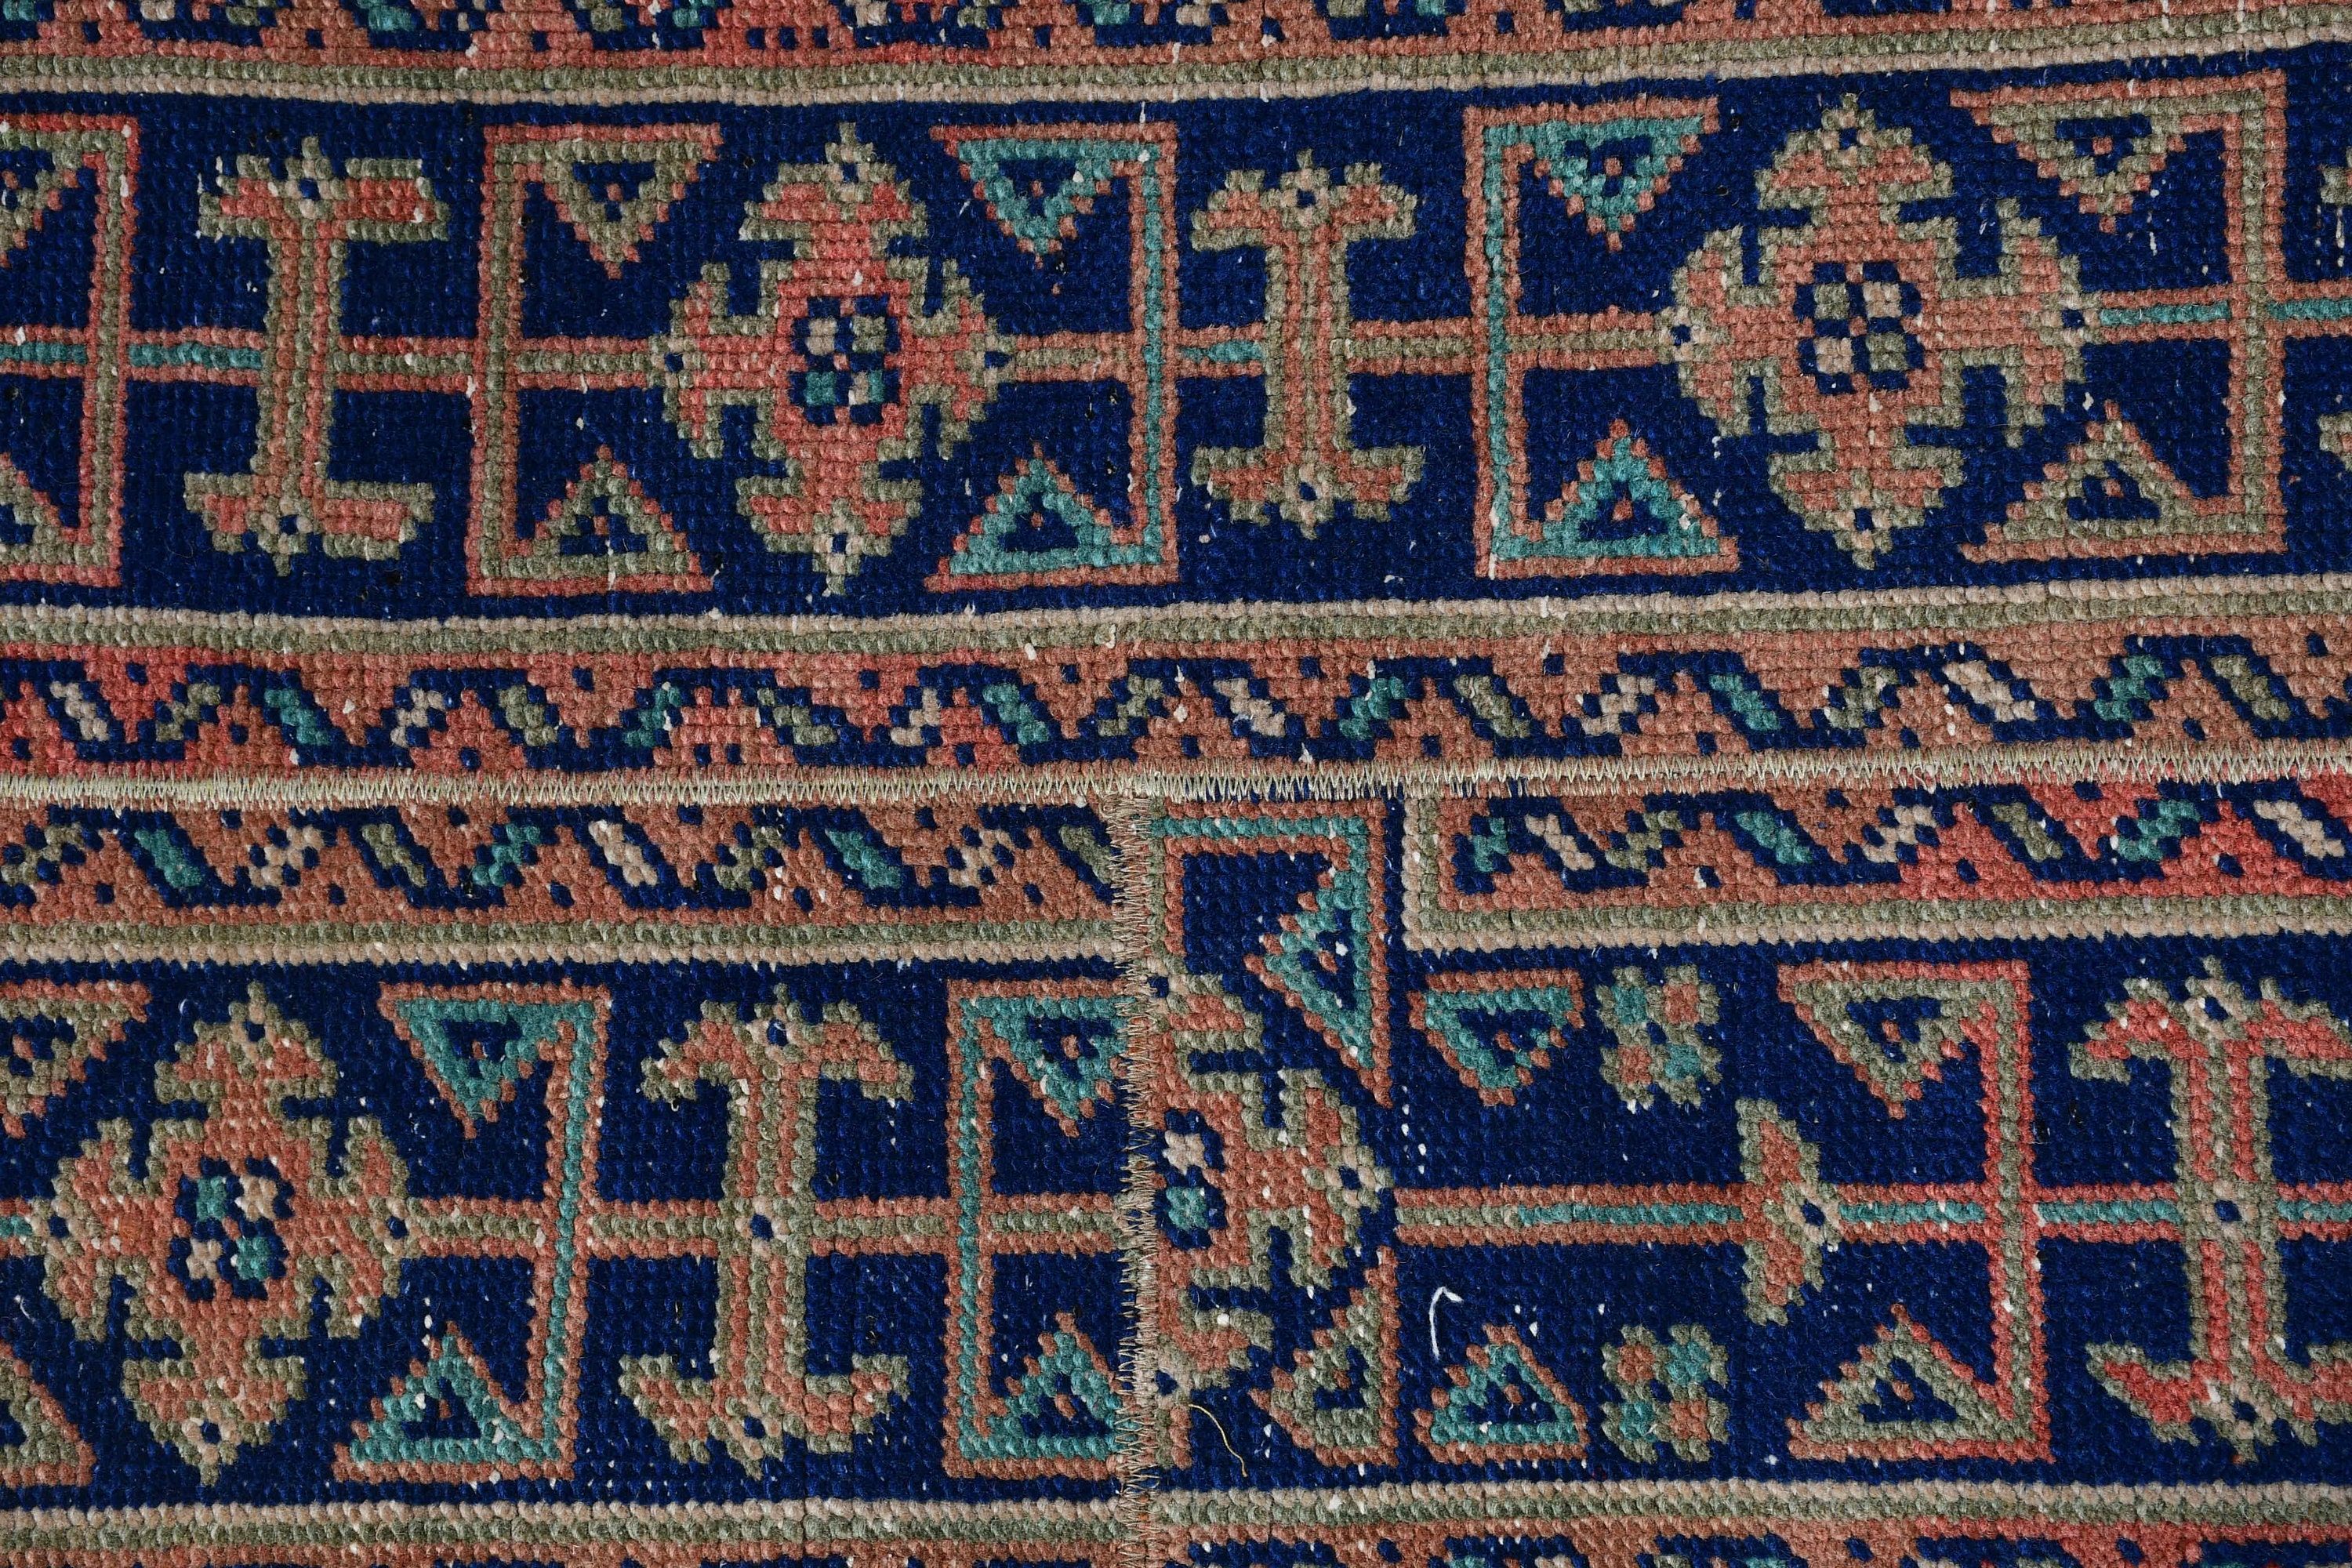 Antique Rug, Stair Rug, Turkish Rug, Vintage Rug, Rugs for Corridor, Hallway Rug, Orange Moroccan Rug, Floor Rug, 1.7x10.2 ft Runner Rug